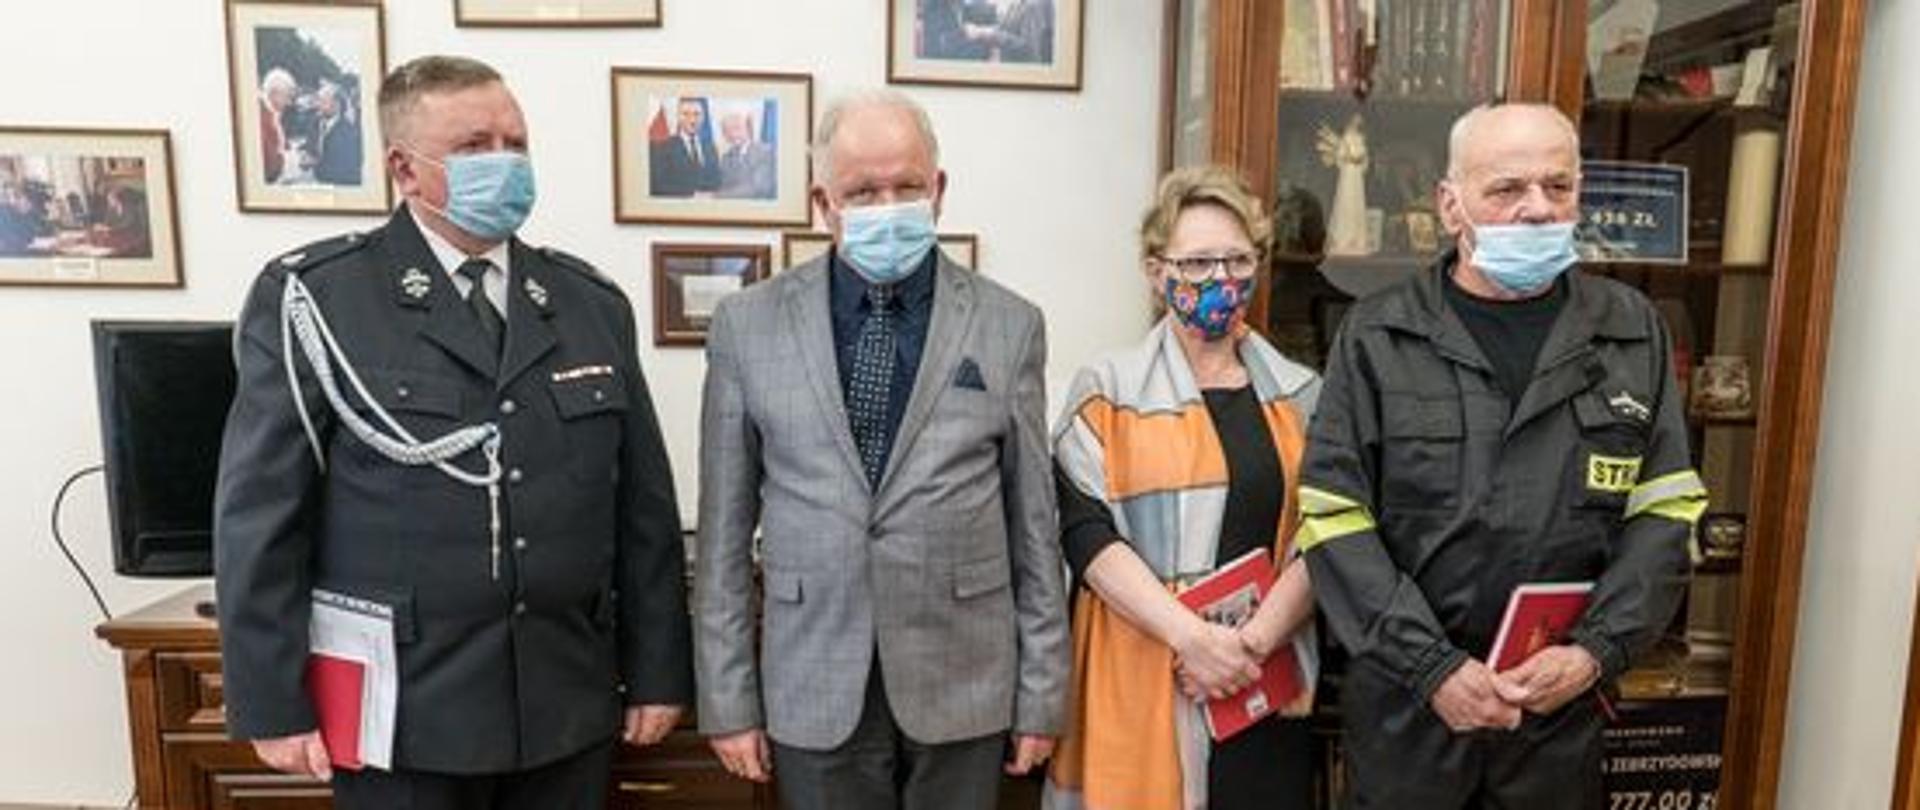 Pozujący do zdjęcia w gabinecie burmistrza, od lewej: Tadeusz Chrostek, Augustyn Ormanty, Zofia Jończyk i Stanisław Brózda. Z tyłu gablota i szafka z telewizorem, na ścianach fotografie w ramkach.